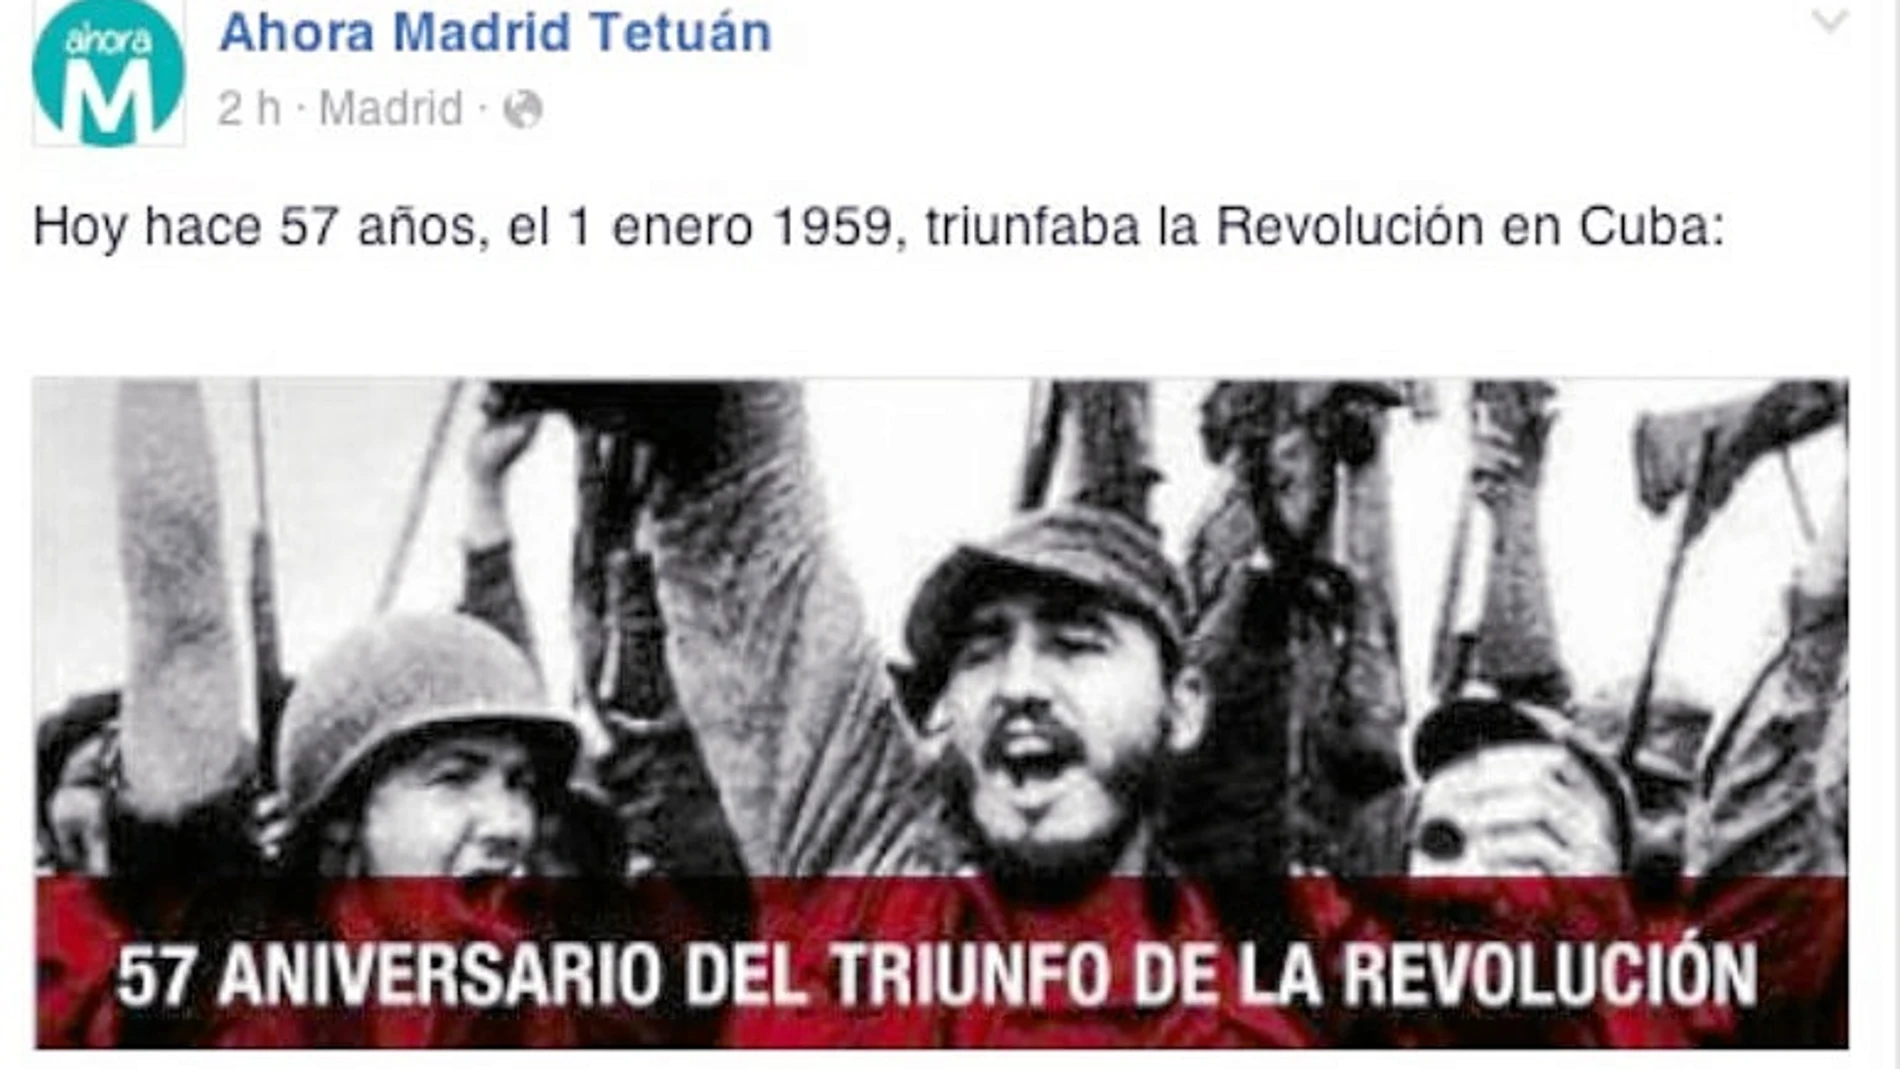 Ahora Madrid Tetuán colgó el pasado viernes en su perfil de Facebook una imagen para conmemorar el 57 aniversario del «triunfo de la Revolución en Cuba»